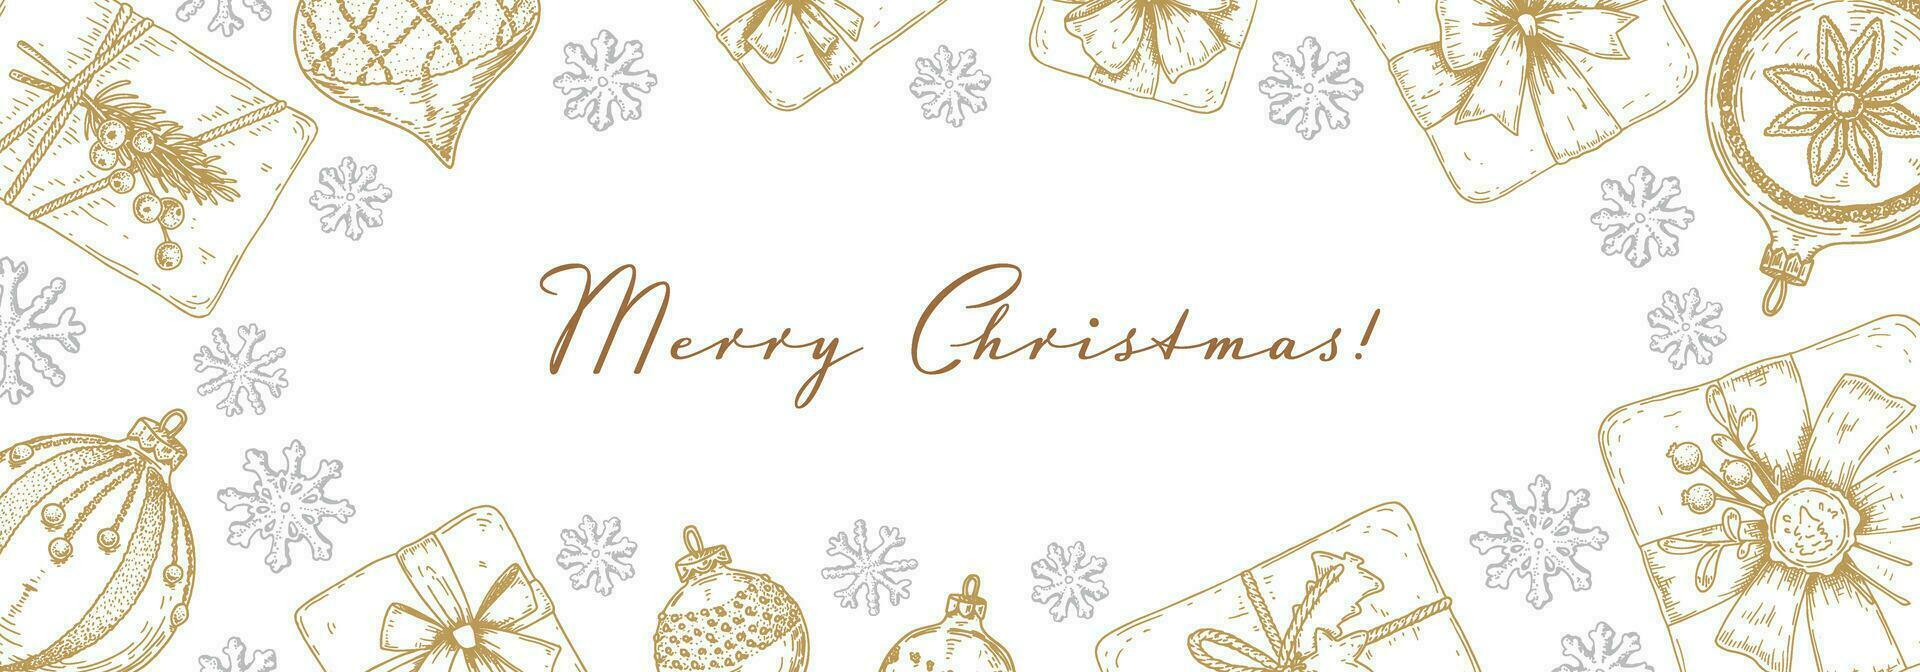 allegro Natale e contento nuovo anno orizzontale saluto carta con mano disegnato d'oro Natale regalo scatole e fiocchi di neve. vettore illustrazione nel schizzo stile. vacanza festivo sfondo